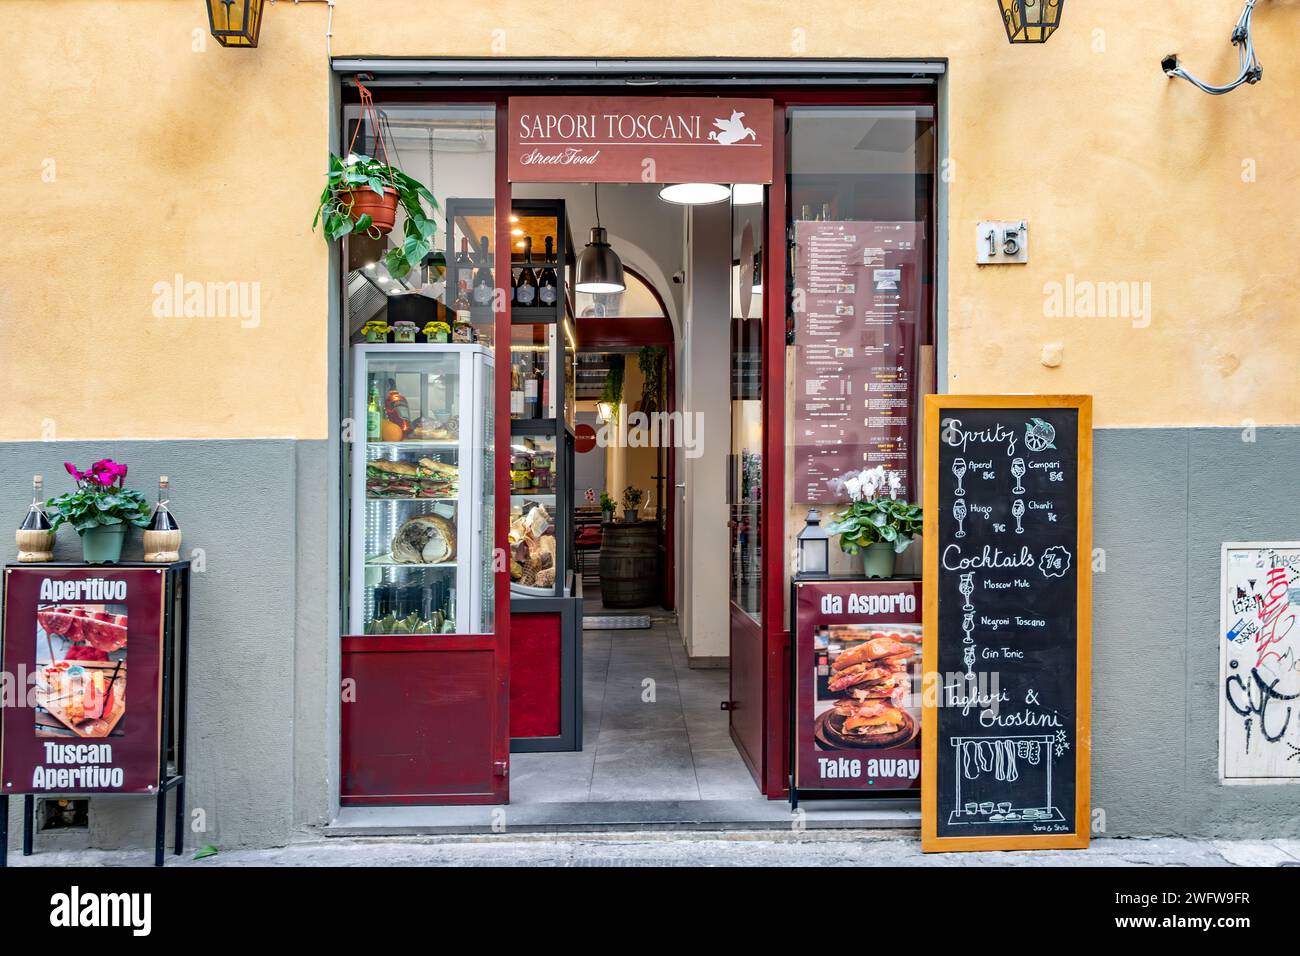 Sapori Toscani Street food , une petite sandwicherie et un bar sur la via dello Sprone, dans le quartier Oltrano de Florence, en Italie Banque D'Images